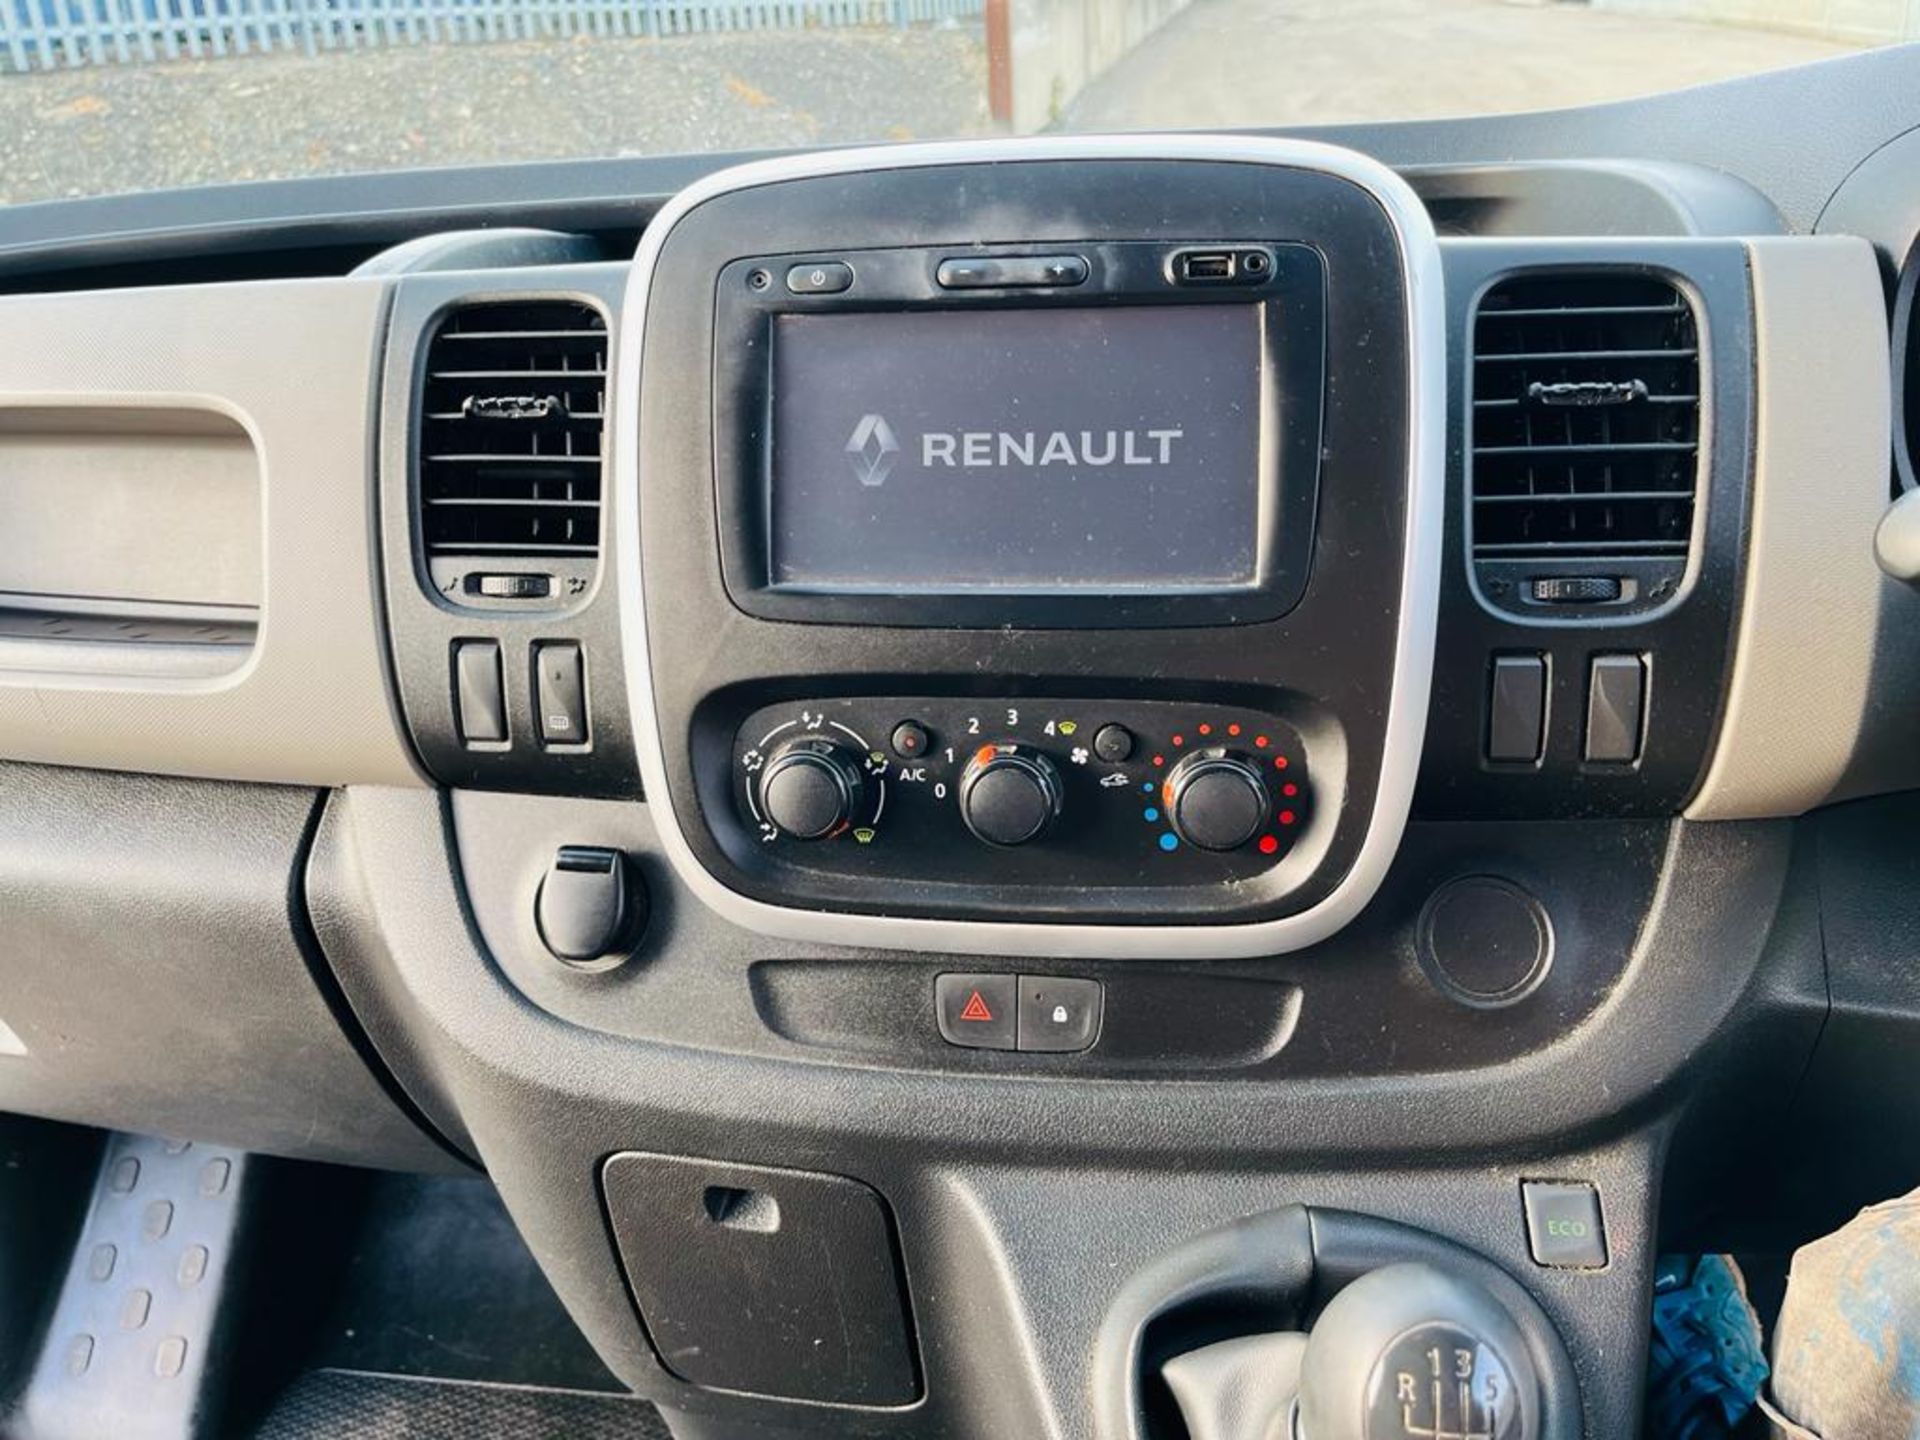 ** ON SALE ** Renault Traffic 1.6 DCI SL27 120 Business 2017 (17 Reg) - No Vat - A/C - Sat Nav - Image 20 of 26